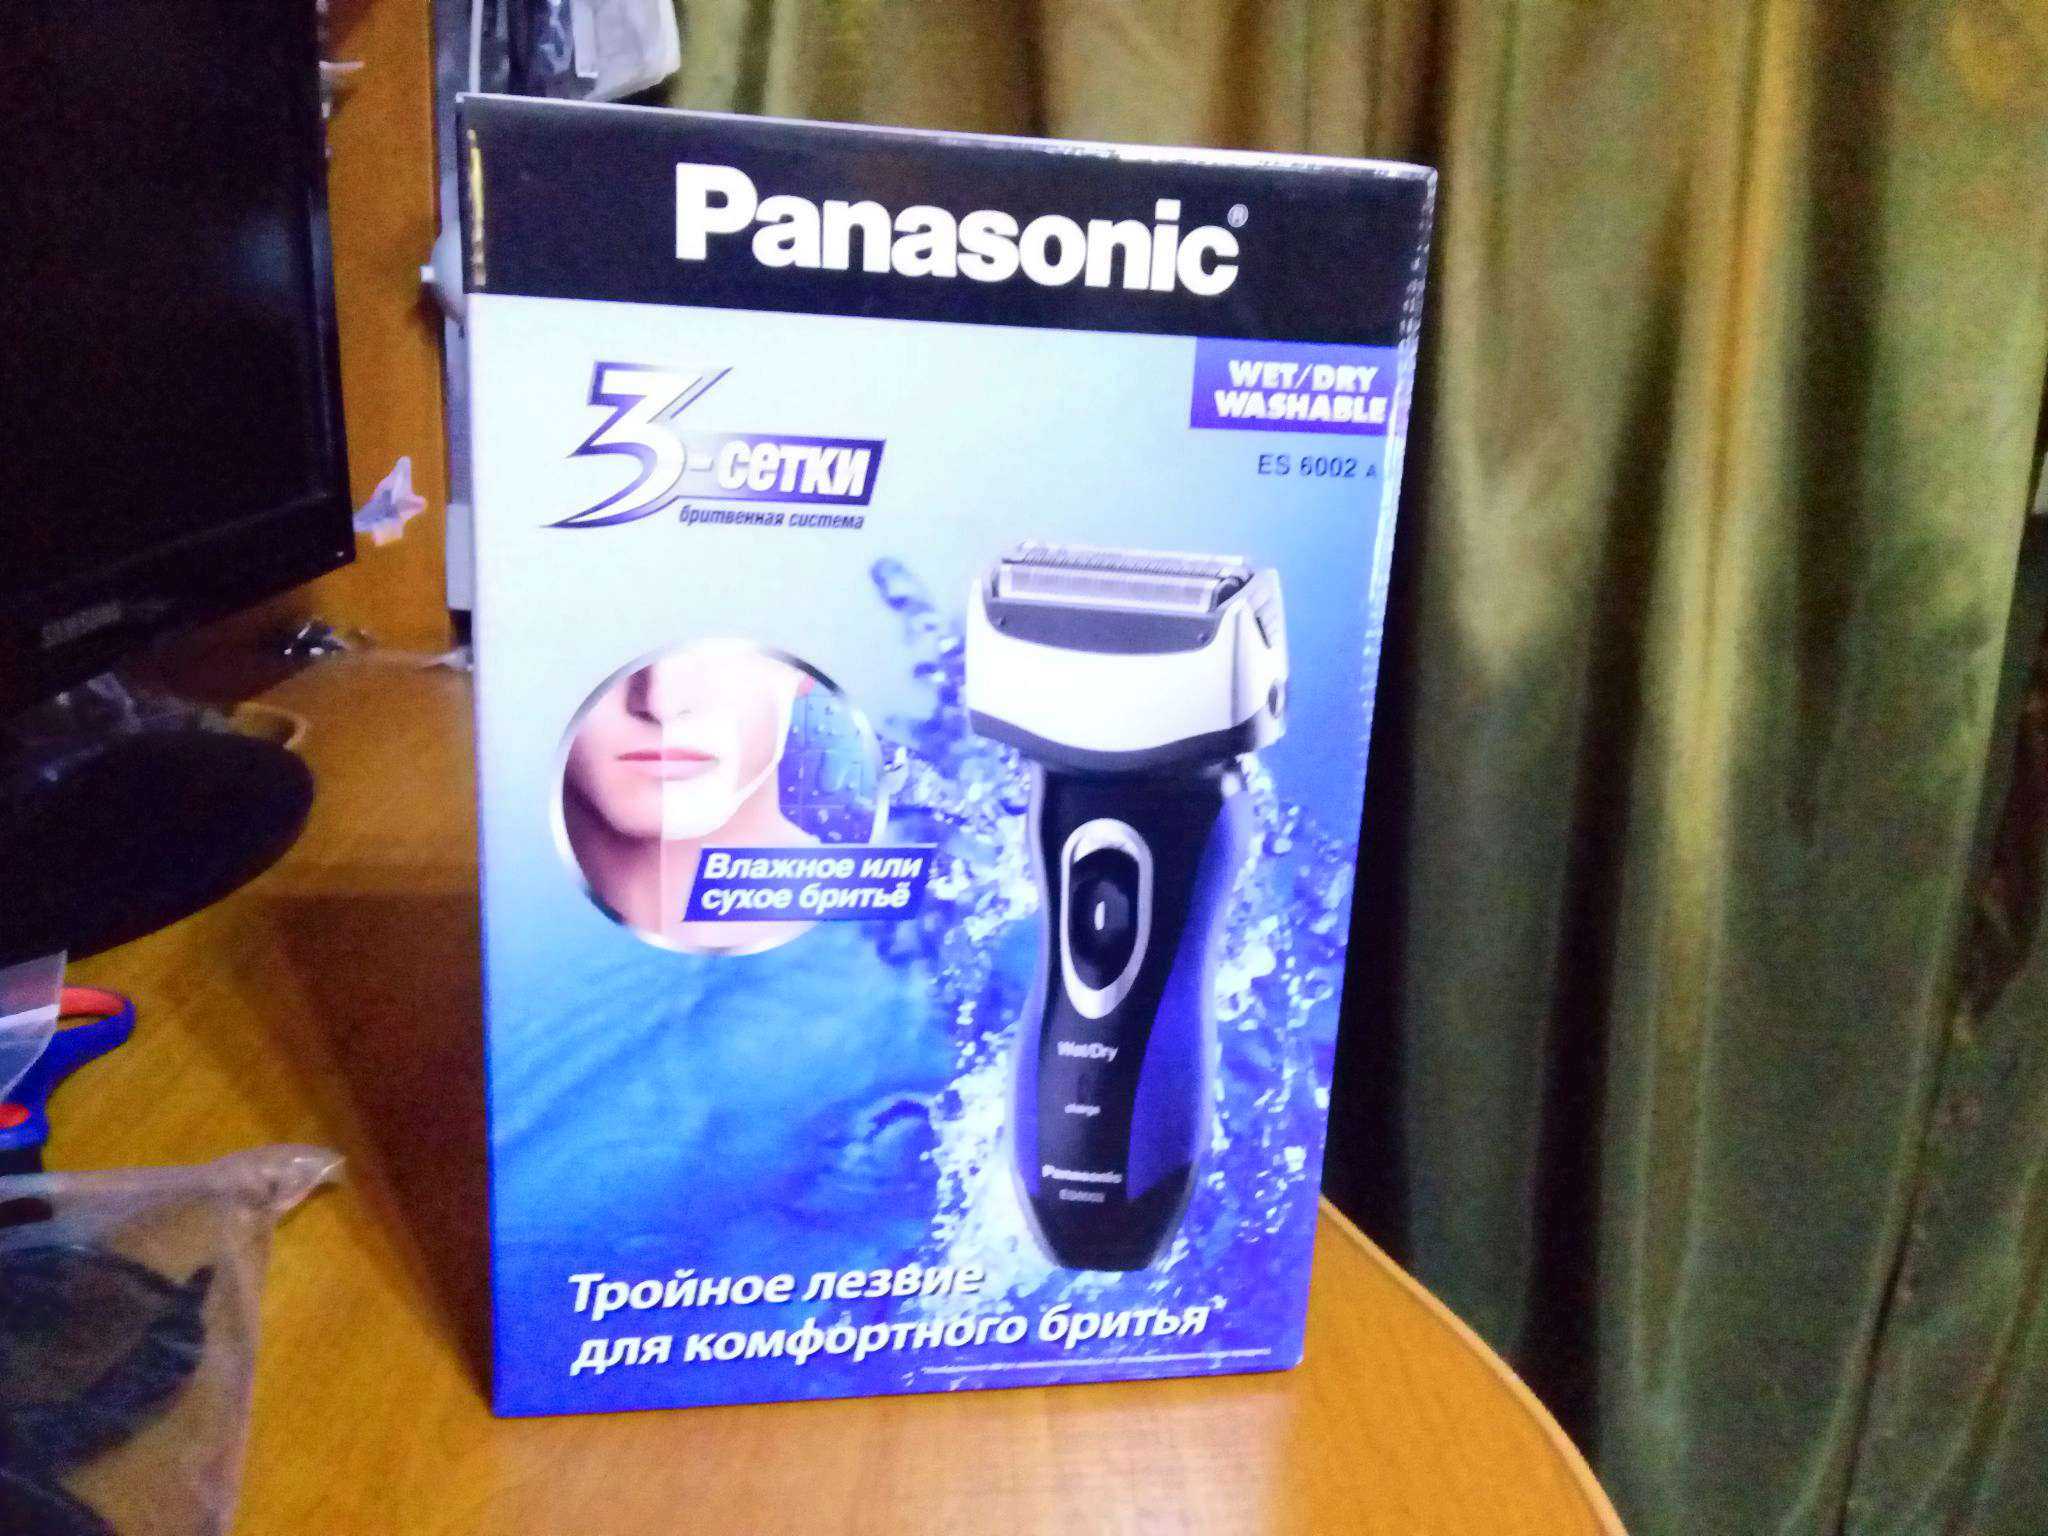 Panasonic es-6002 (черно-синий) - купить , скидки, цена, отзывы, обзор, характеристики - электробритвы мужские